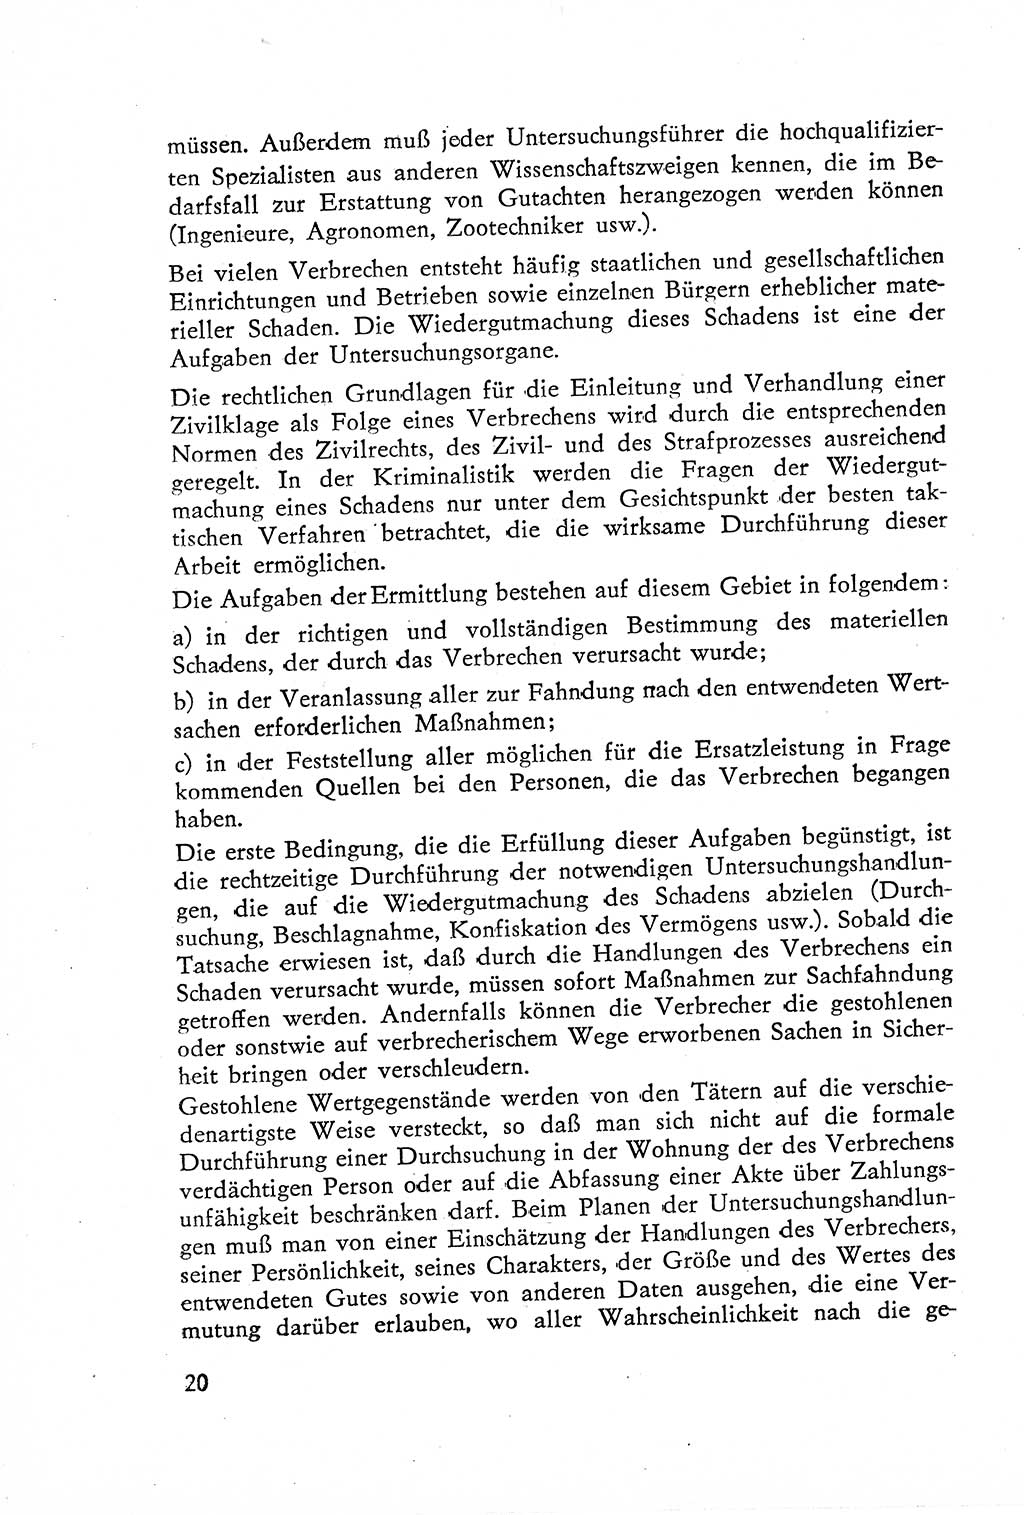 Die Untersuchung einzelner Verbrechensarten [Deutsche Demokratische Republik (DDR)] 1960, Seite 20 (Unters. Verbr.-Art. DDR 1960, S. 20)